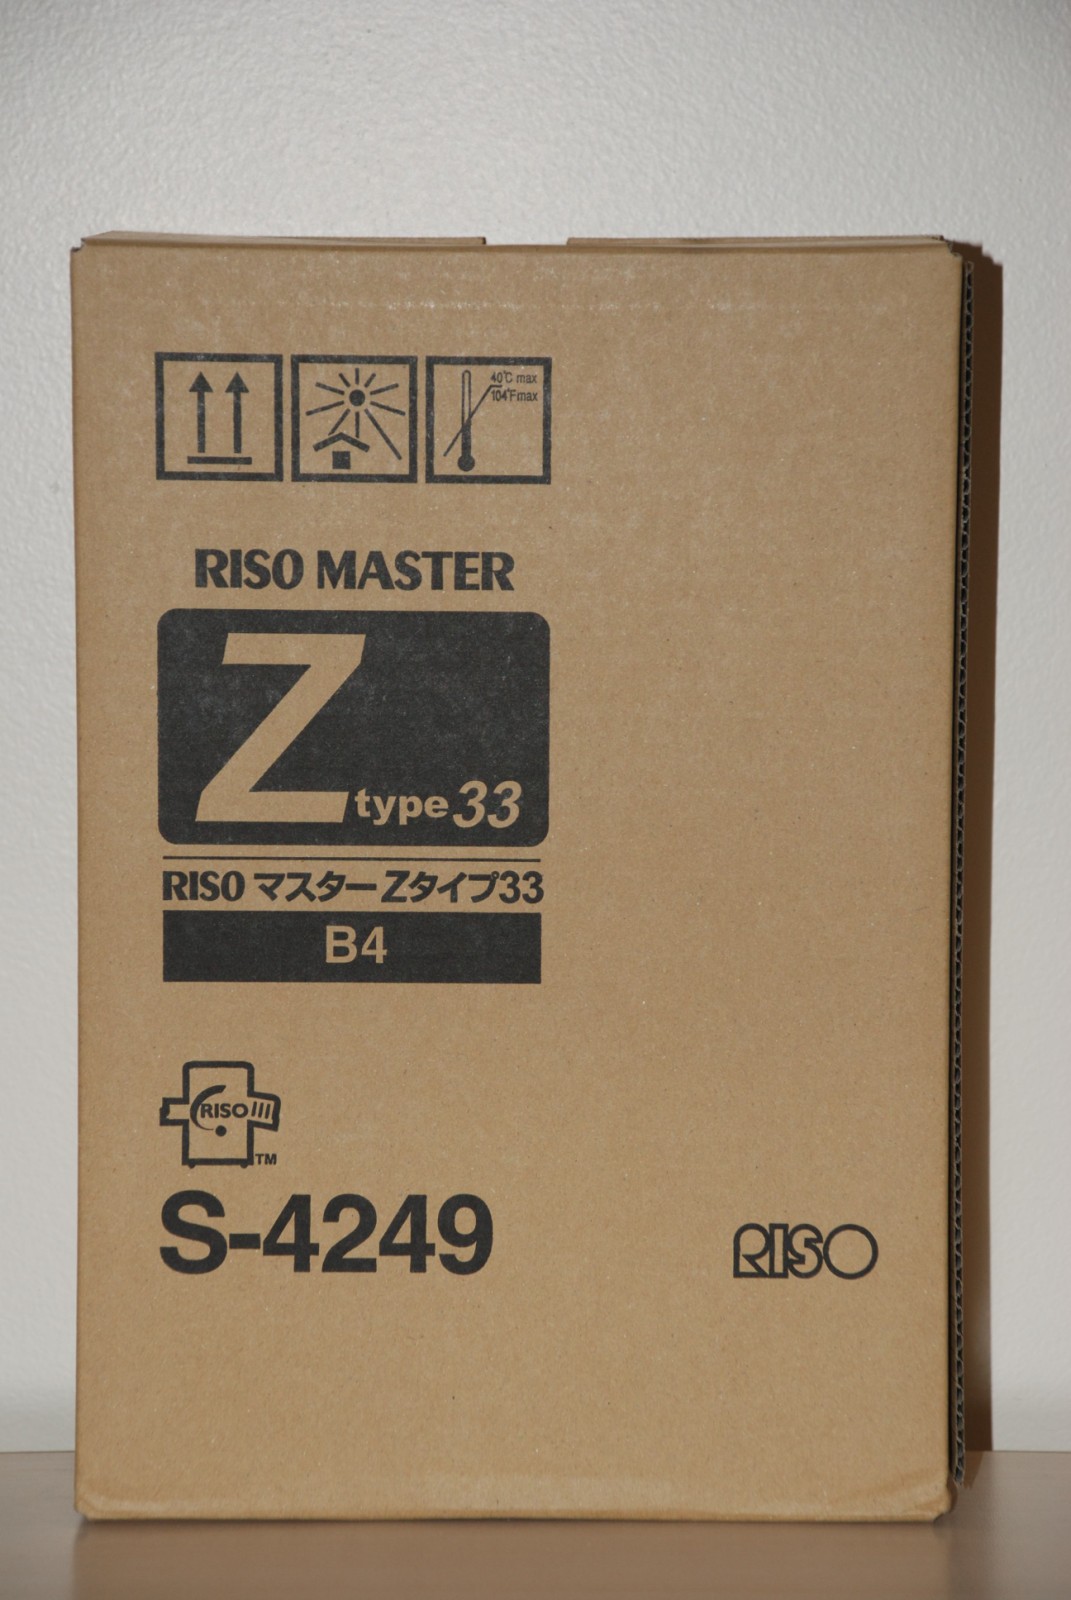 Risograph s-4249 master kit originale B4, confezione da 2 pezzi